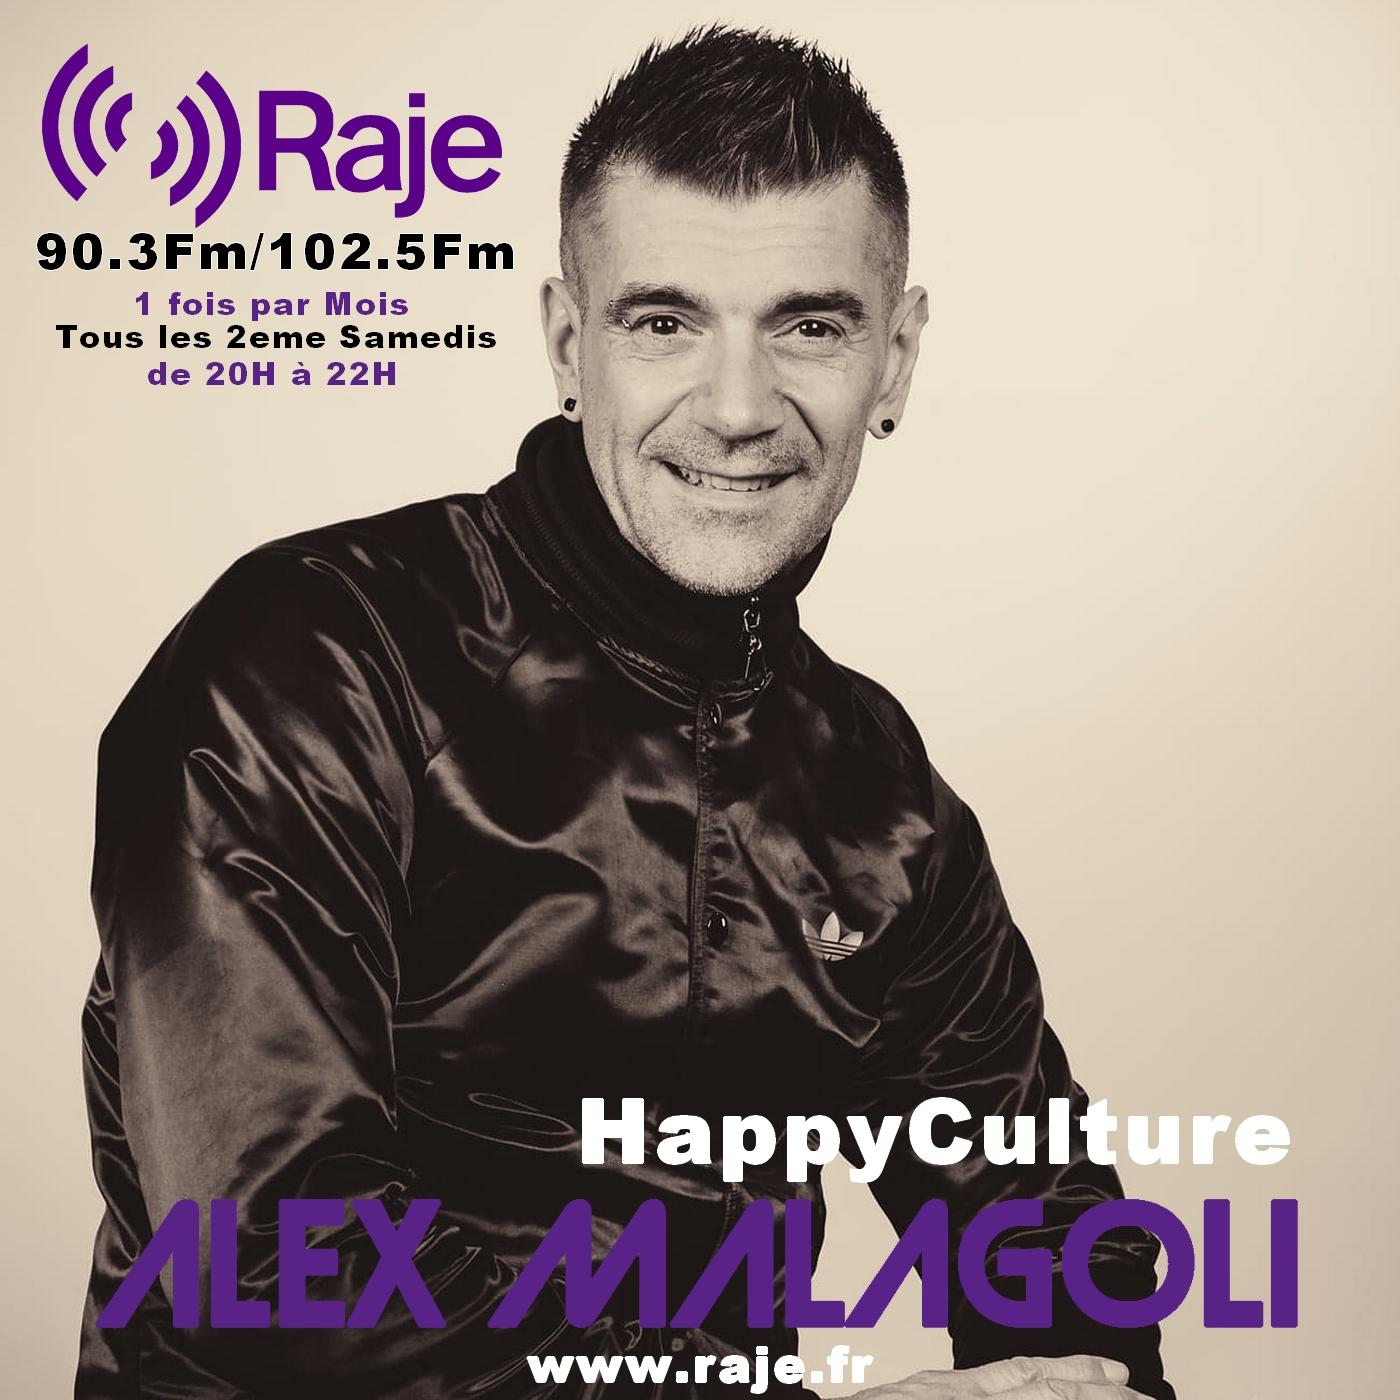 Alex Malagoli débarque sur Raje avec Happyculture ! 100 % house music !